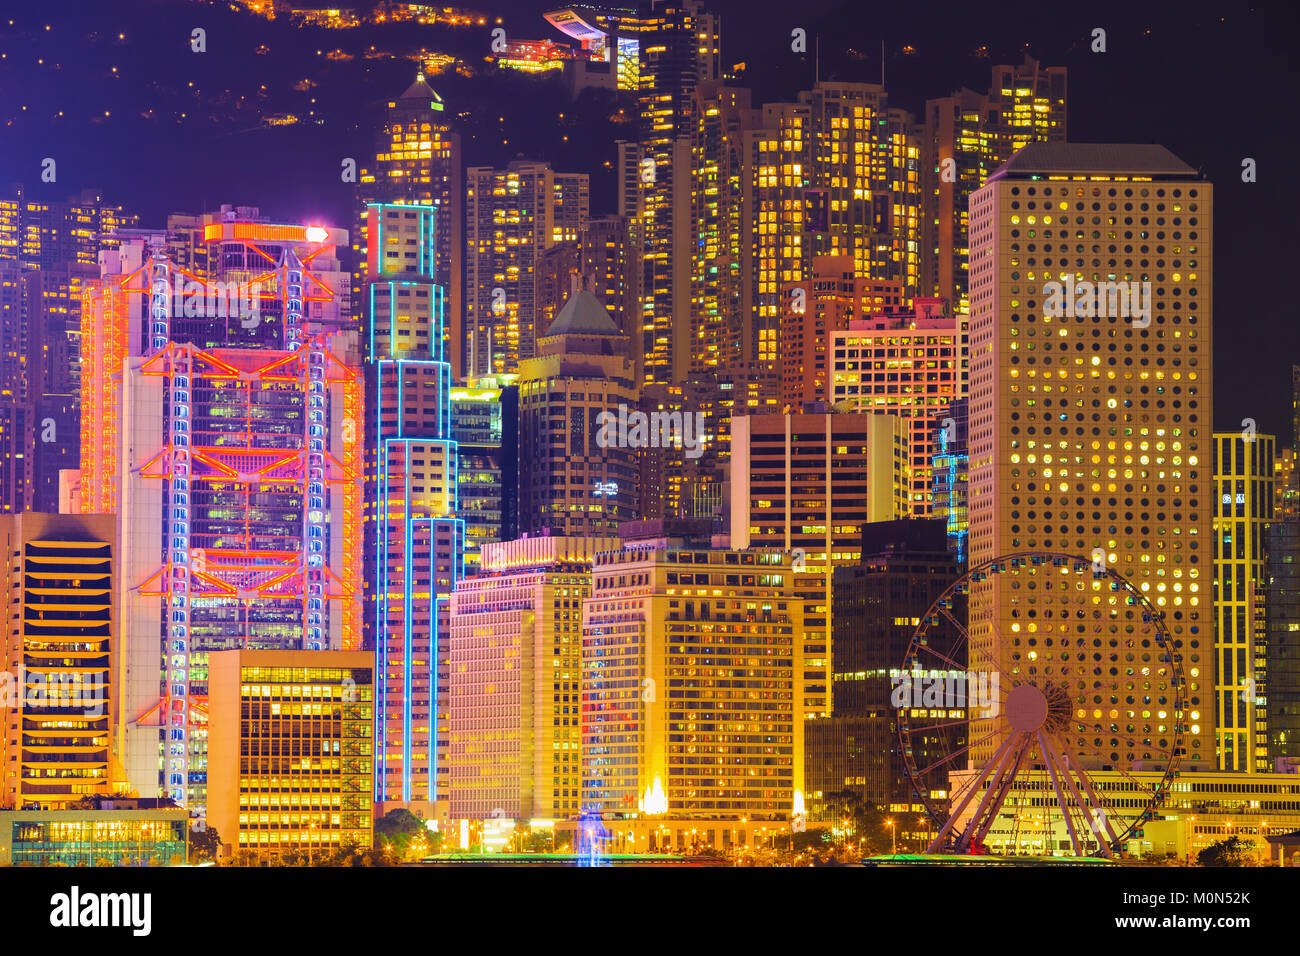 Vue imprenable sur les gratte-ciel de Hong Kong City, Chine Banque D'Images